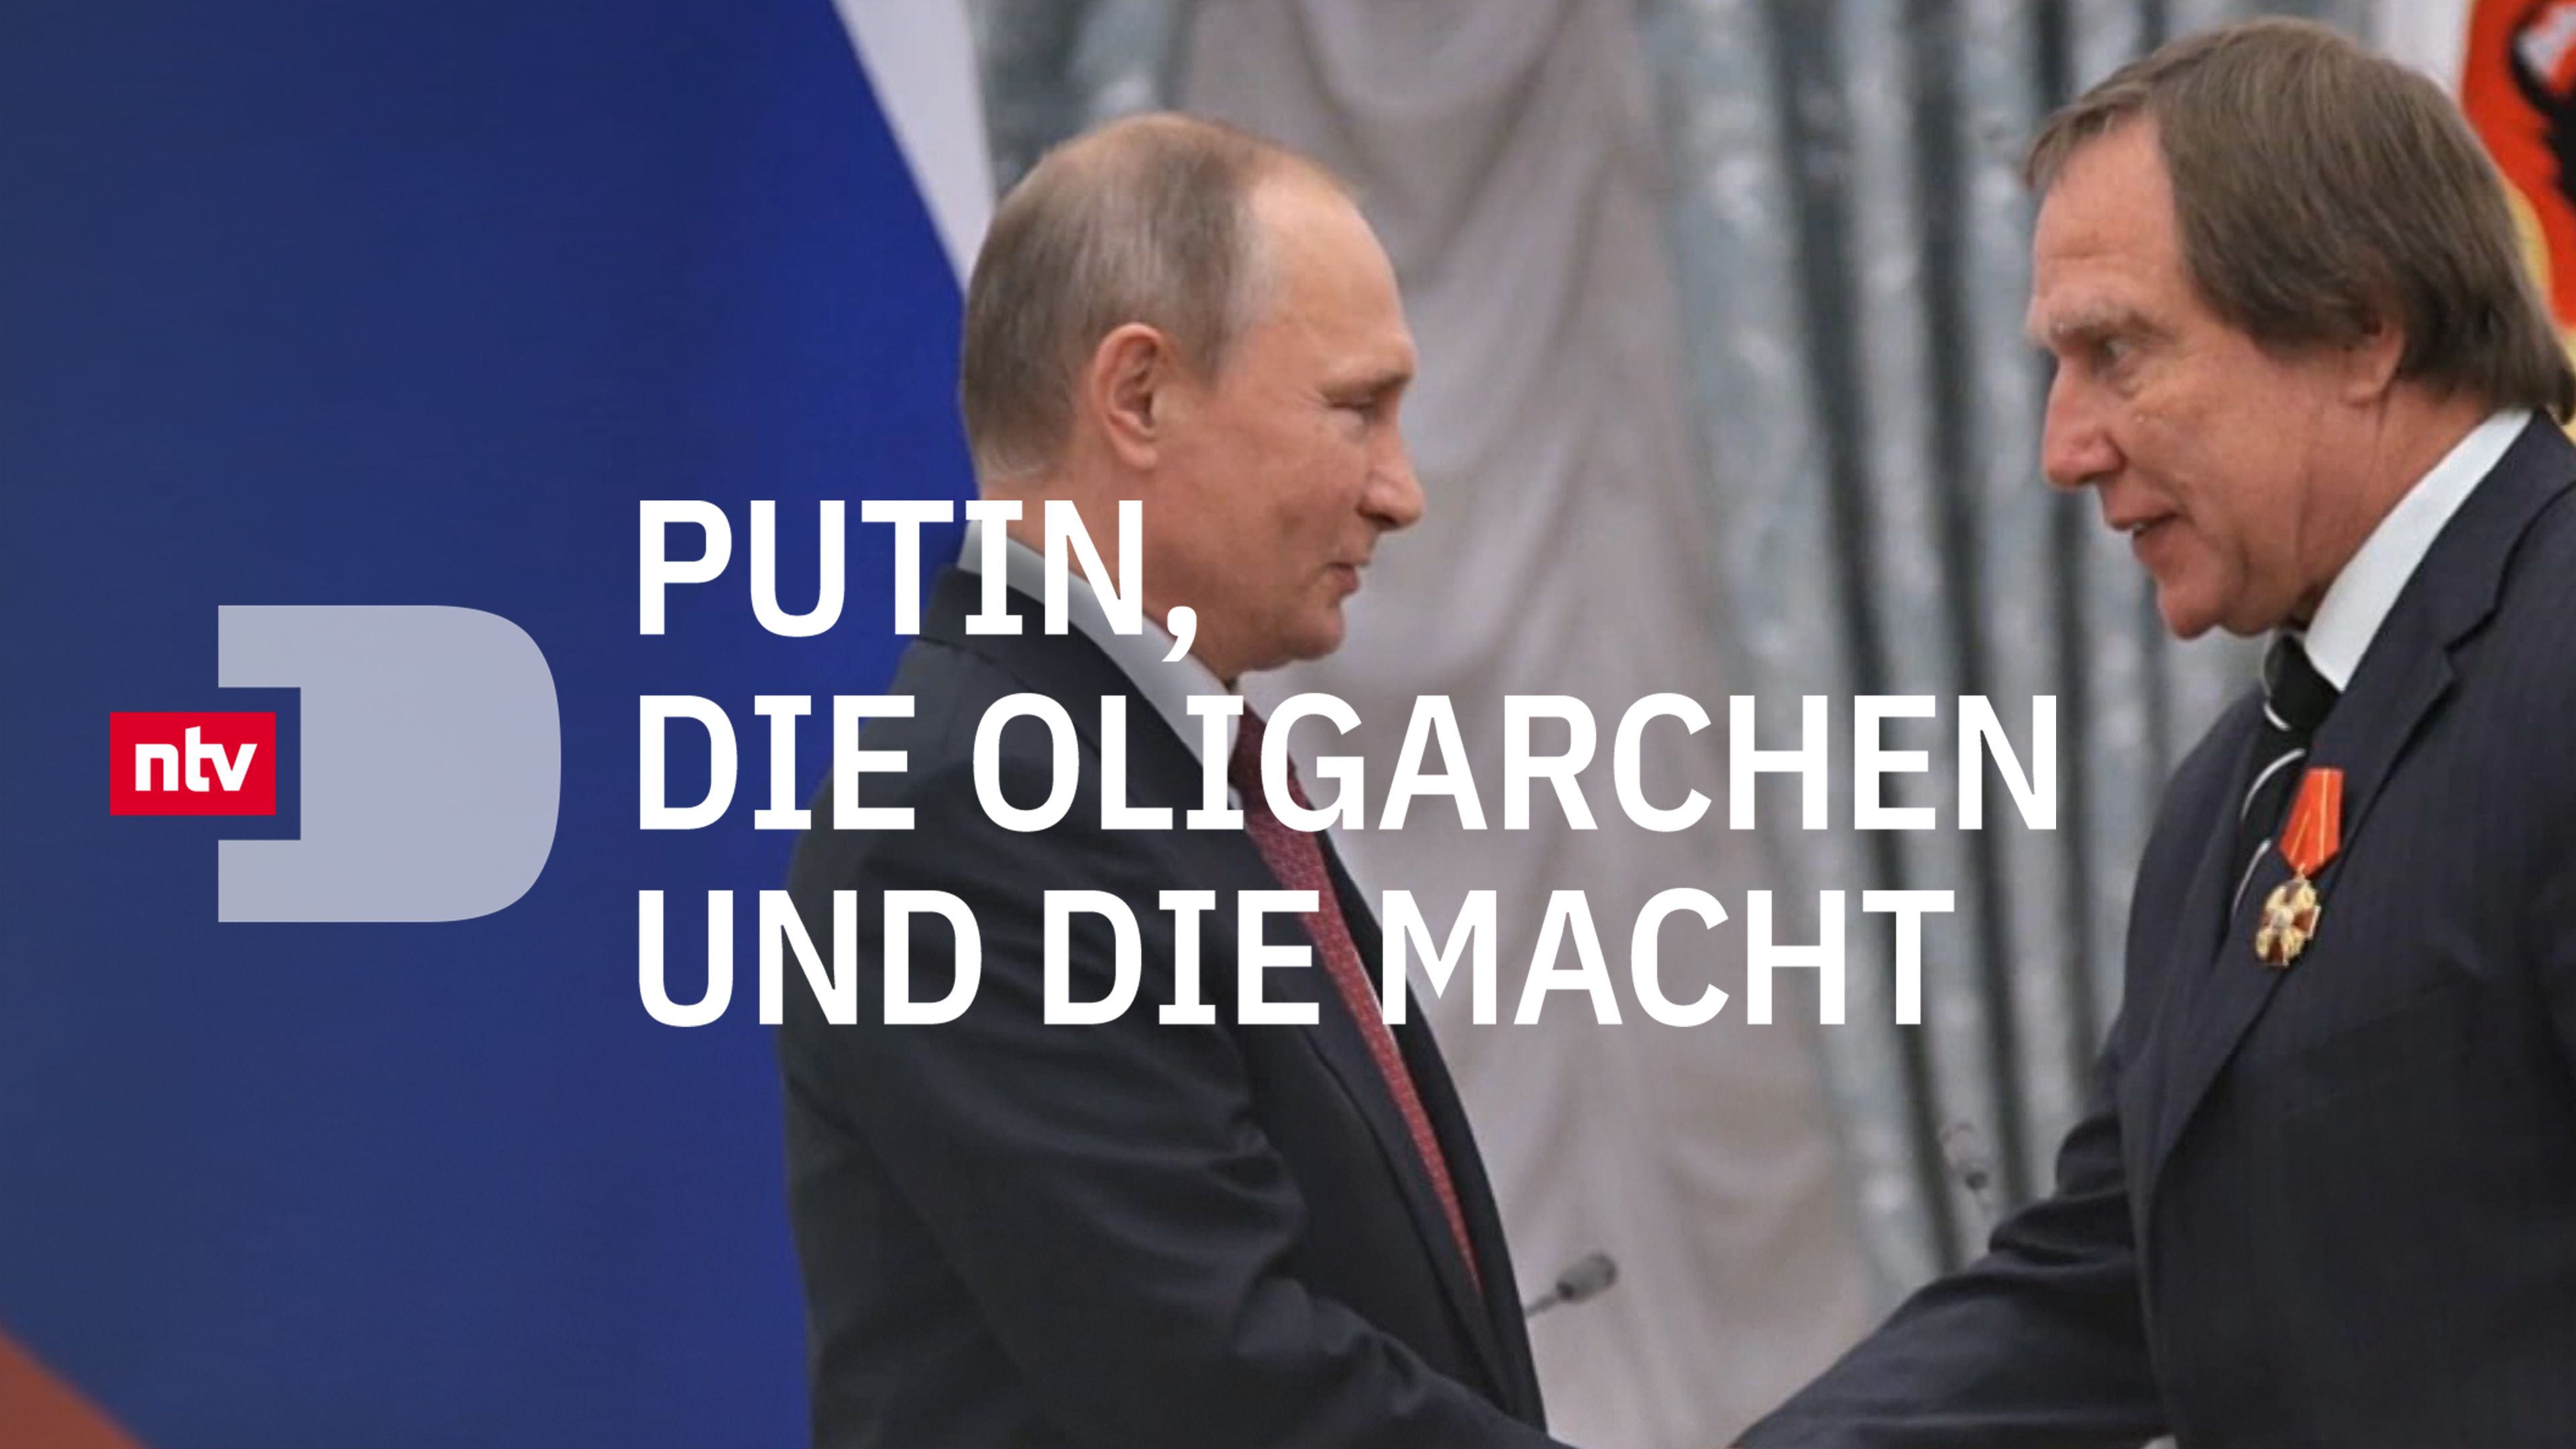 Putin, die Oligarchen und die Macht